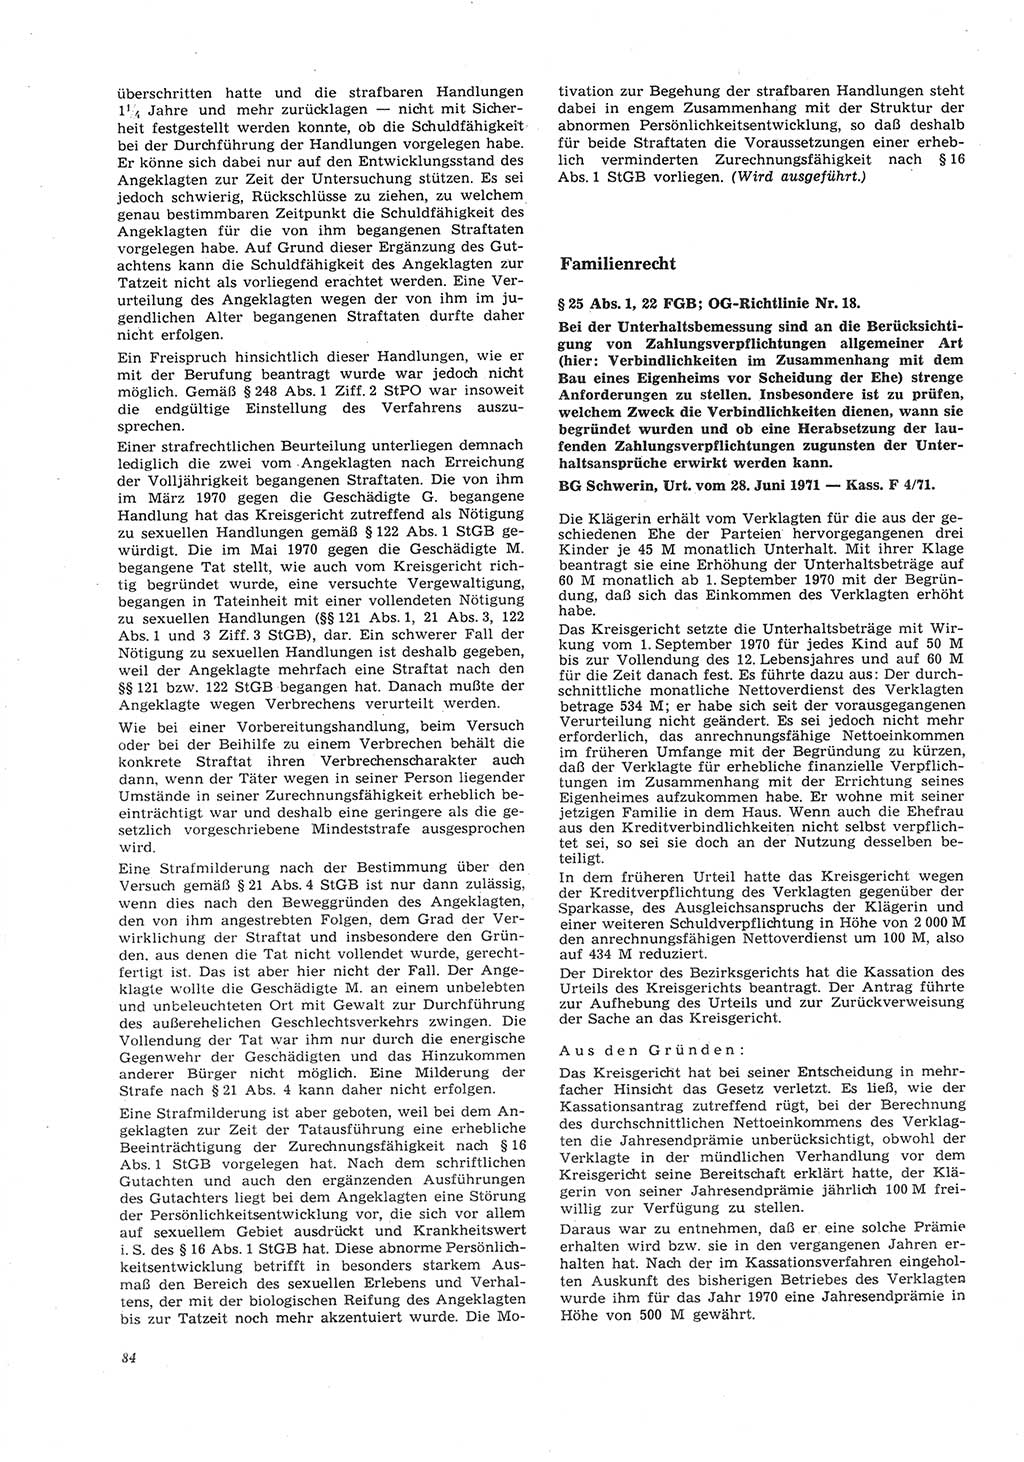 Neue Justiz (NJ), Zeitschrift für Recht und Rechtswissenschaft [Deutsche Demokratische Republik (DDR)], 26. Jahrgang 1972, Seite 84 (NJ DDR 1972, S. 84)